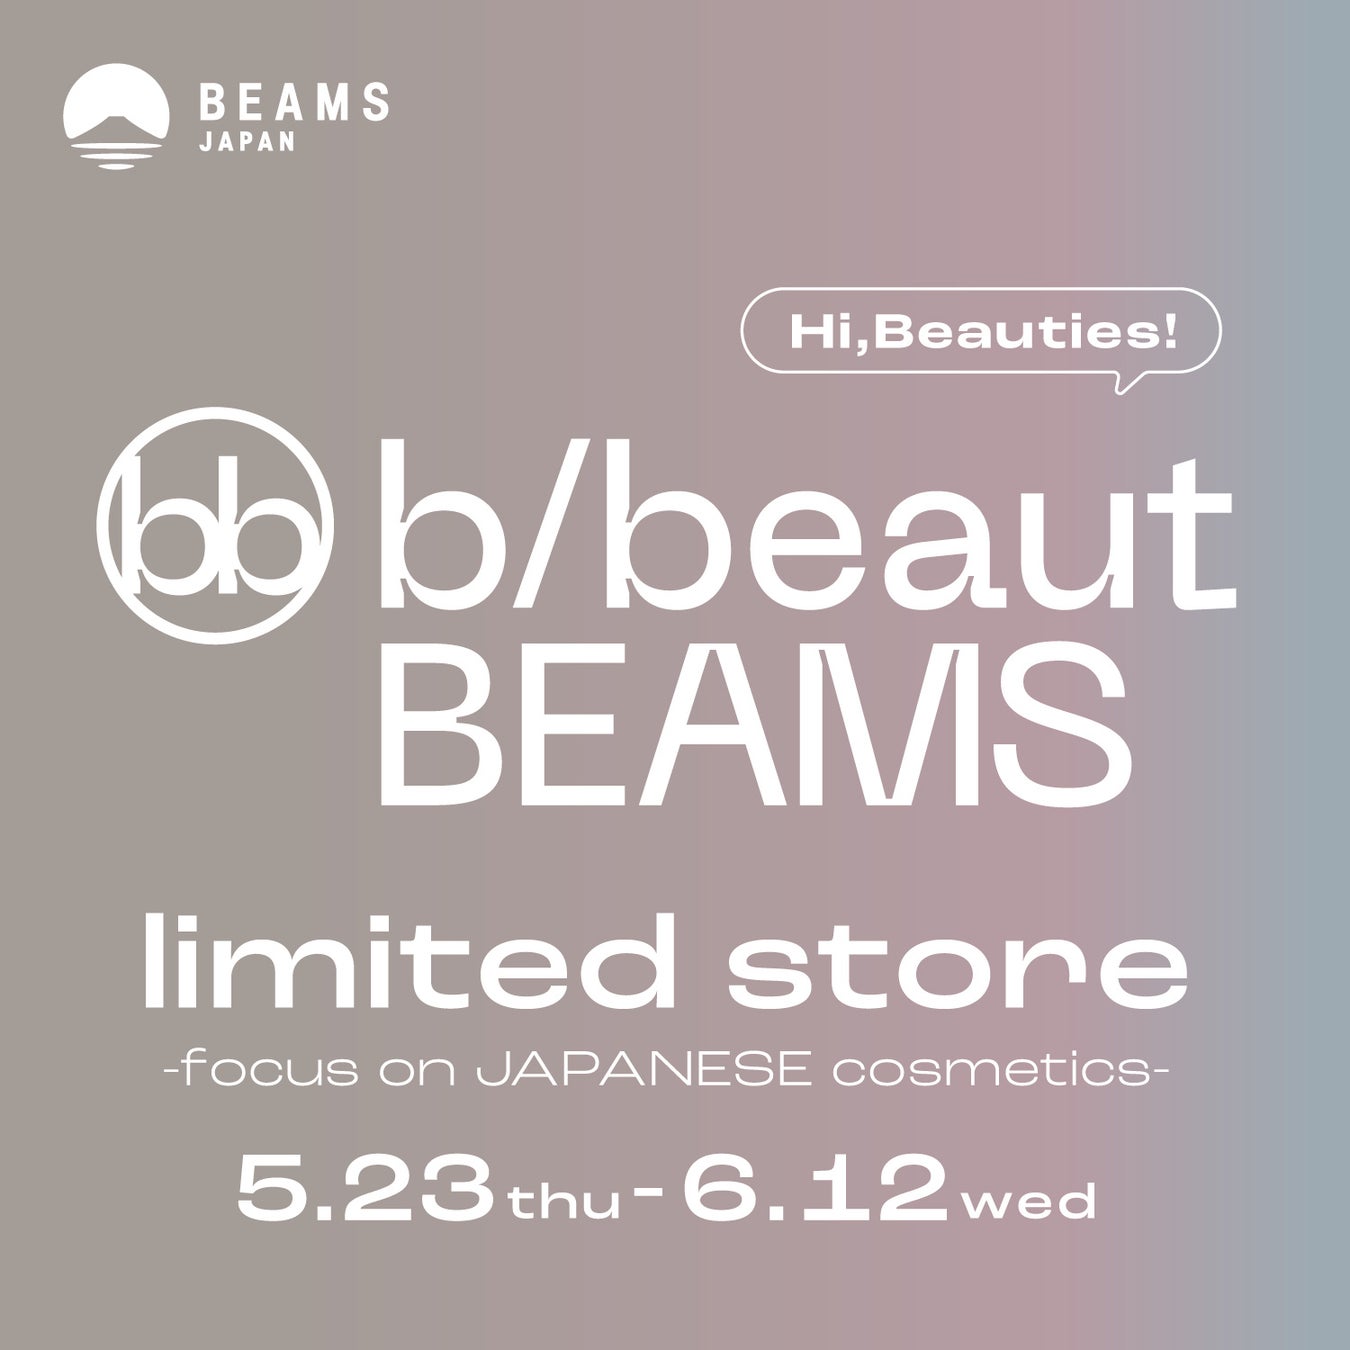 ビームスが展開するビューティ&ウェルネスブランド〈b/beaut BEAMS〉の初となるリミテッドストアを、5月23日（木）より「ビームス ジャパン」内にオープン